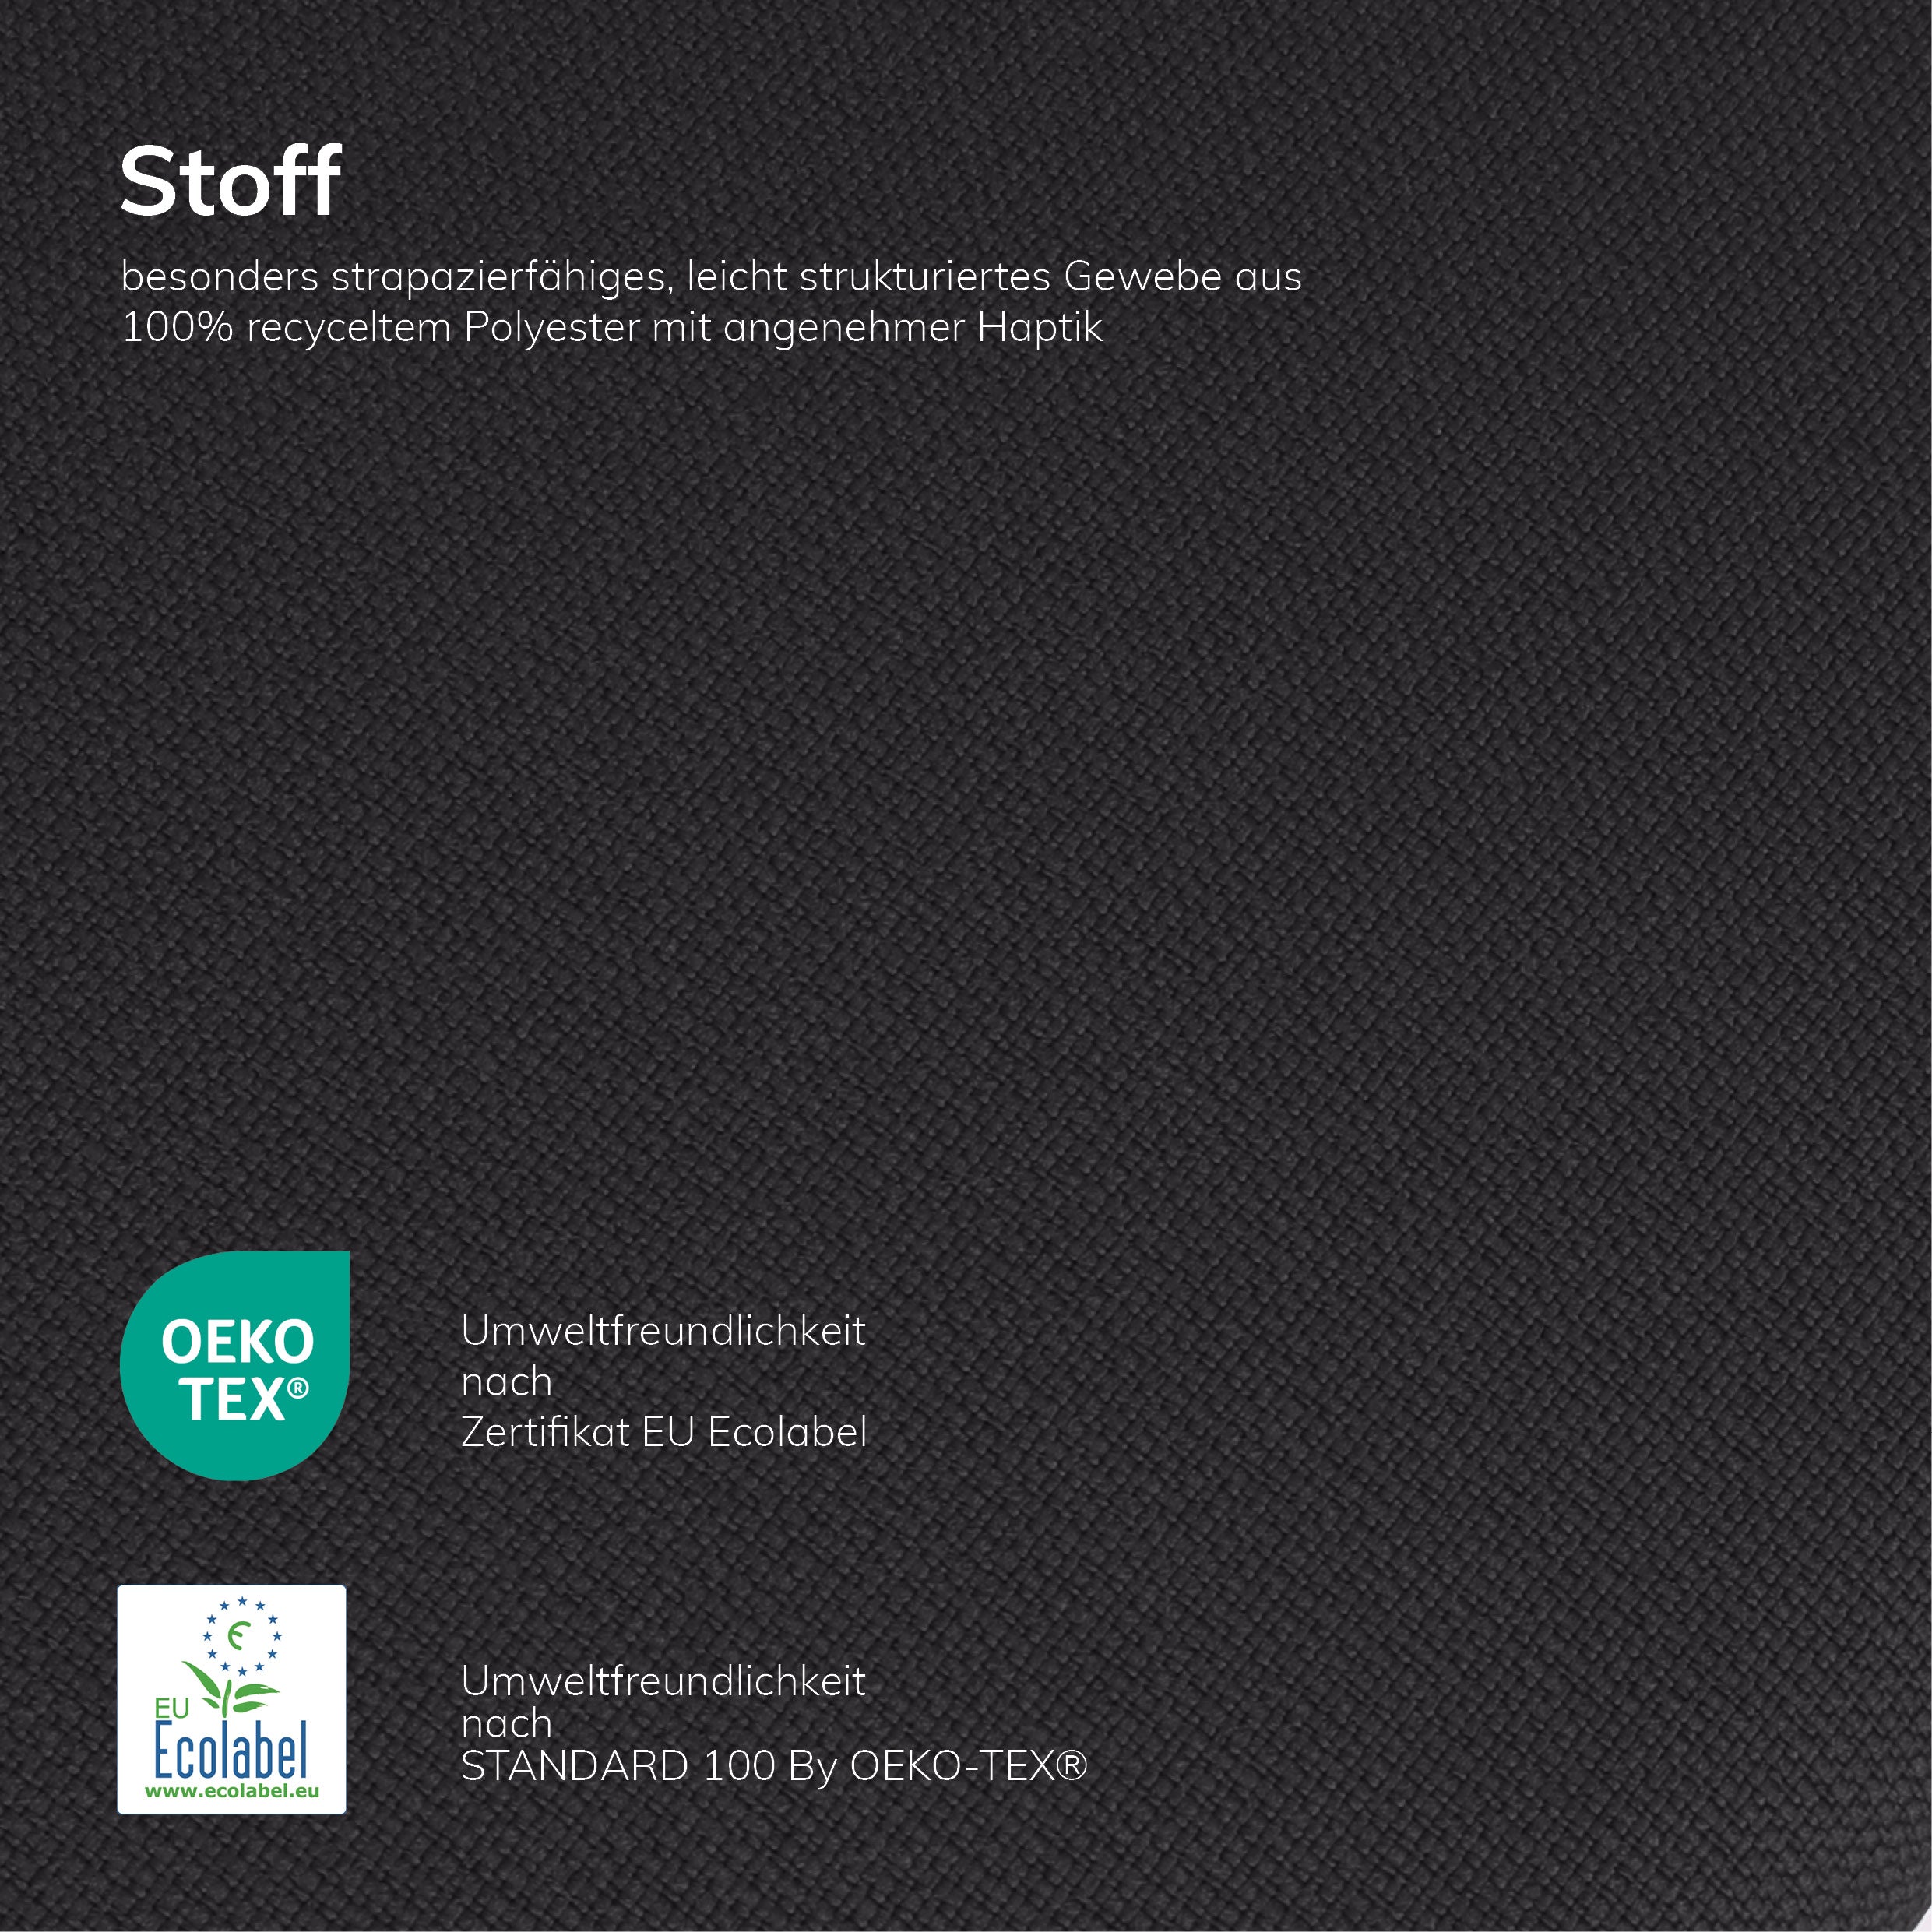 Ergonomischer Bürohocker Hocker - Stehhilfe mit Bodenwippe von der Marke: Lento - Modell: Sella Activa - verhindert Rückenschmerzen und Verspannungen - STOFF SCHWARZ - Made in Germany 🇩🇪